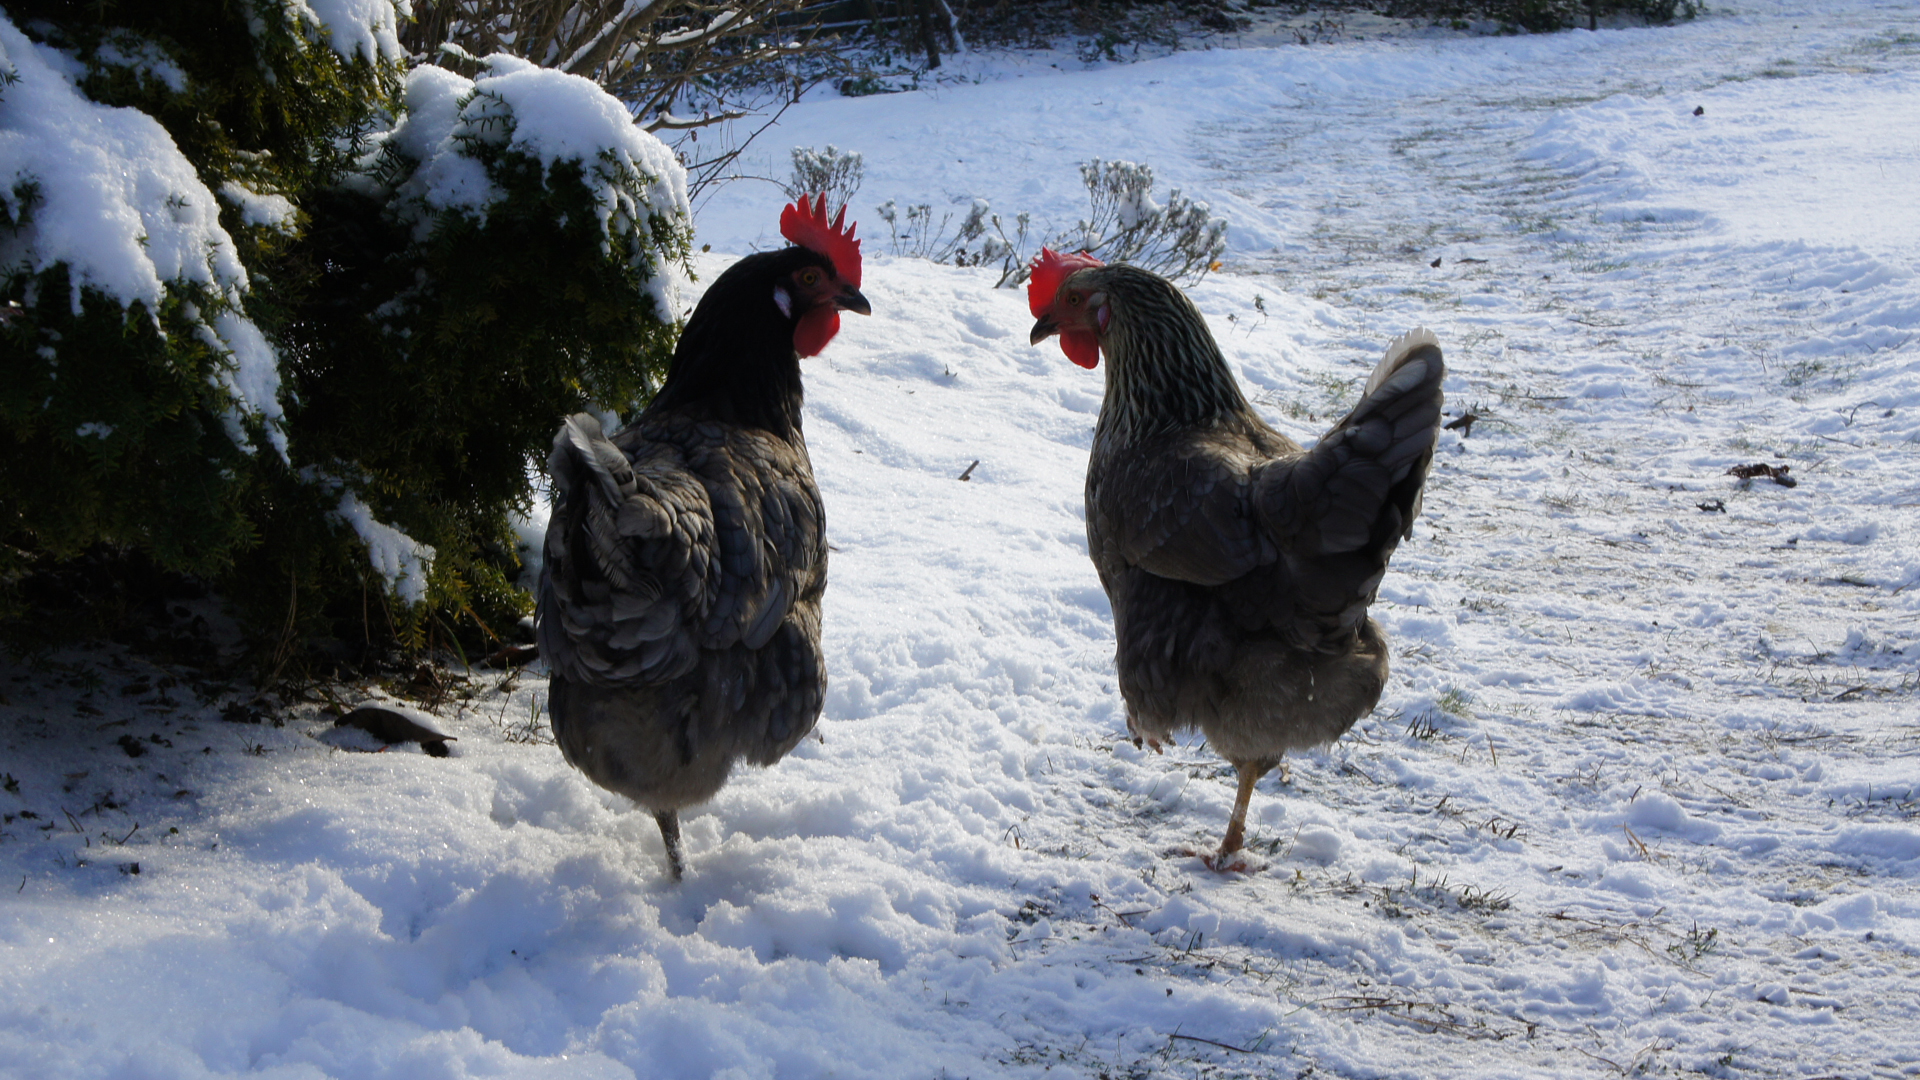 Fotostrecke Hühner 20: Hühner im Schnee II